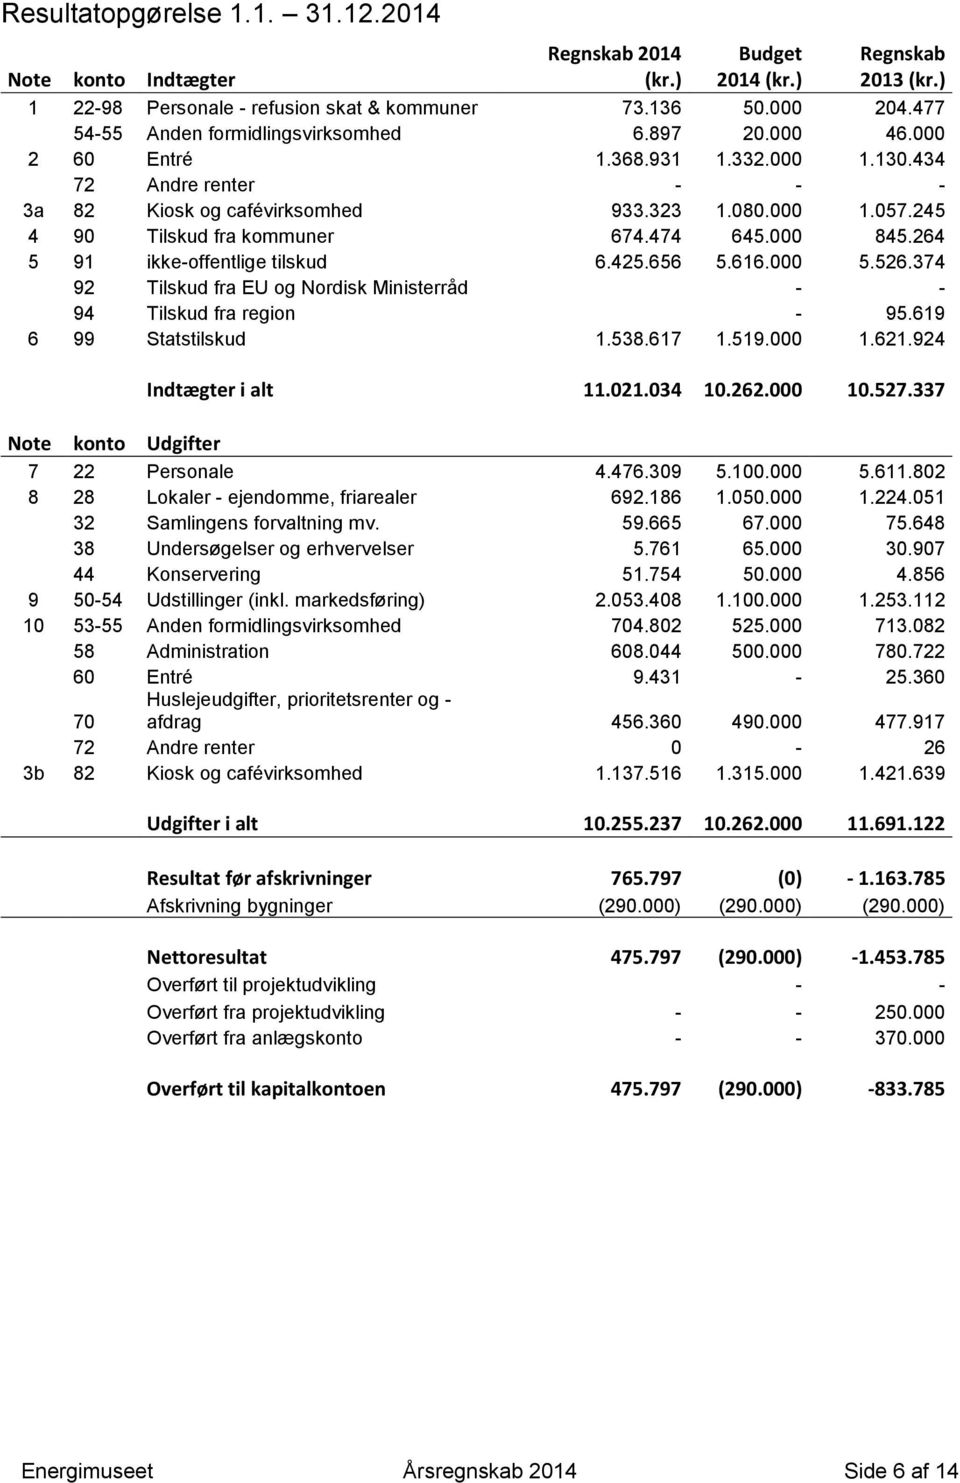 264 5 91 ikke-offentlige tilskud 6.425.656 5.616.000 5.526.374 92 Tilskud fra EU og Nordisk Ministerråd - - 94 Tilskud fra region - 95.619 6 99 Statstilskud 1.538.617 1.519.000 1.621.